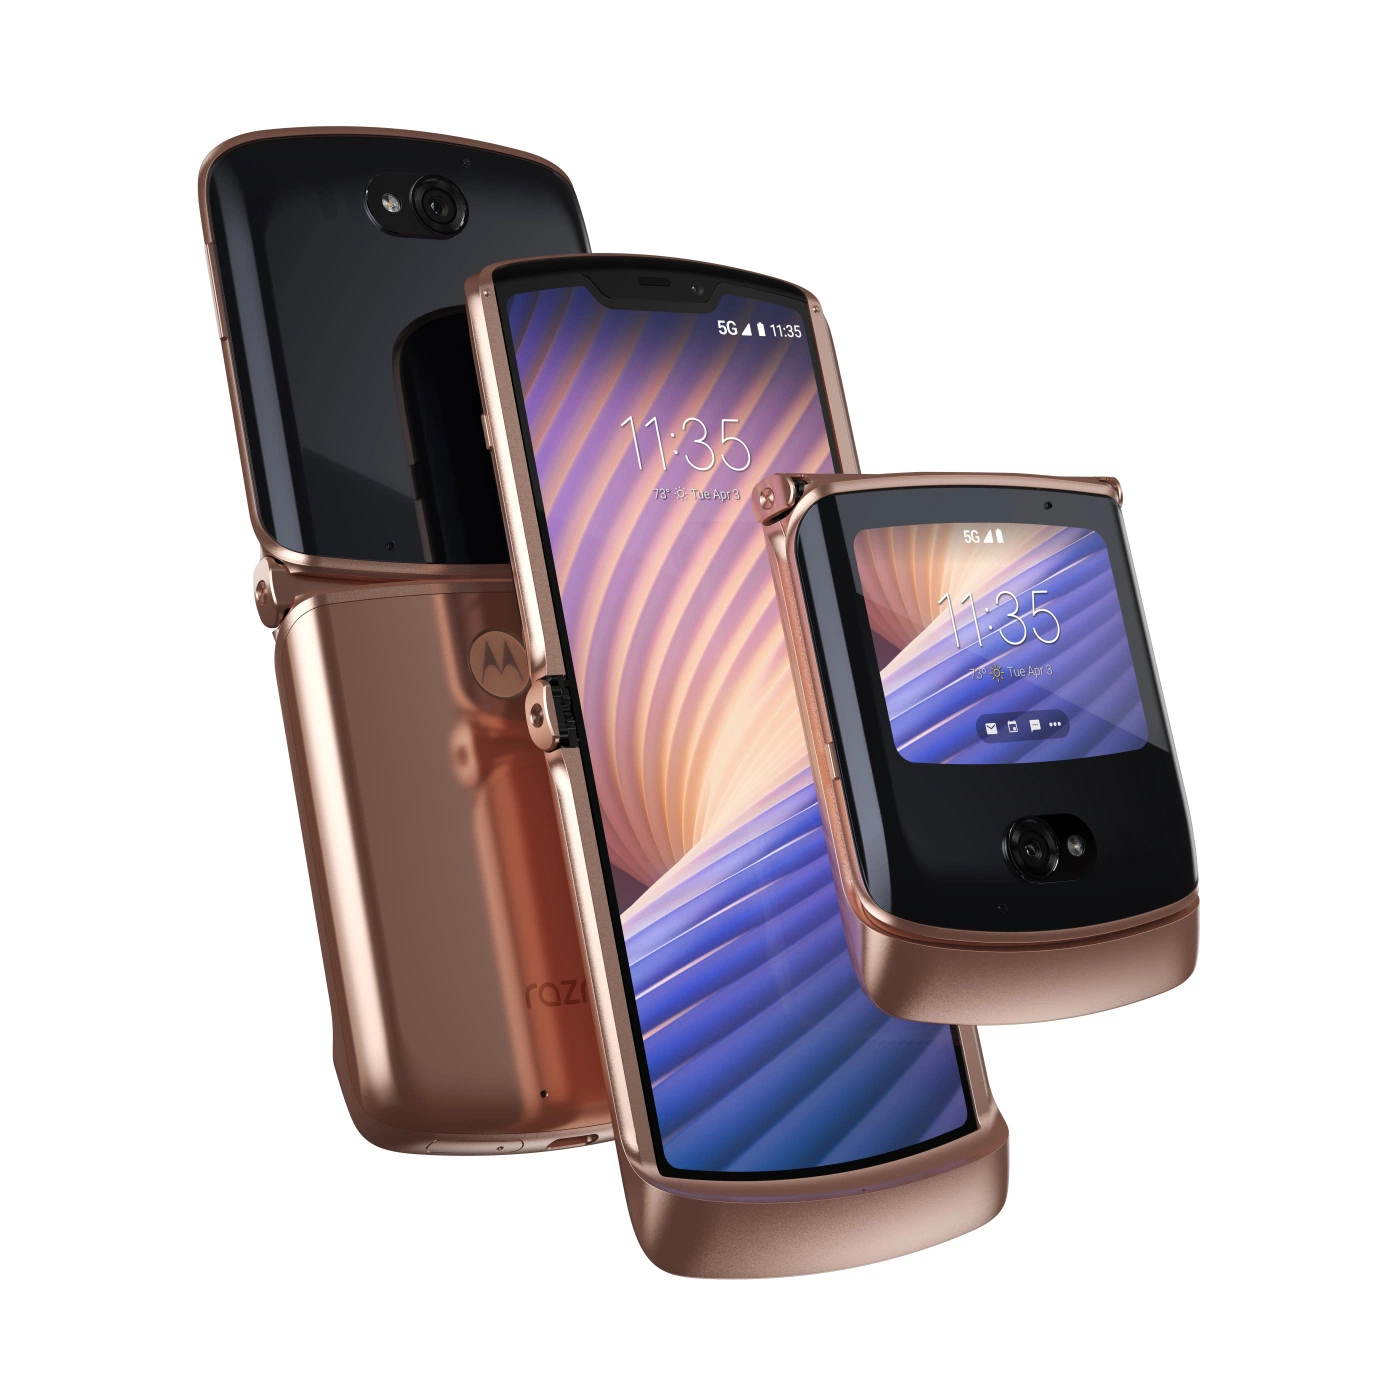 摩托罗拉手机伸缩新手机razr将于10月2日在美发布市场销售 先发价钱1199美金